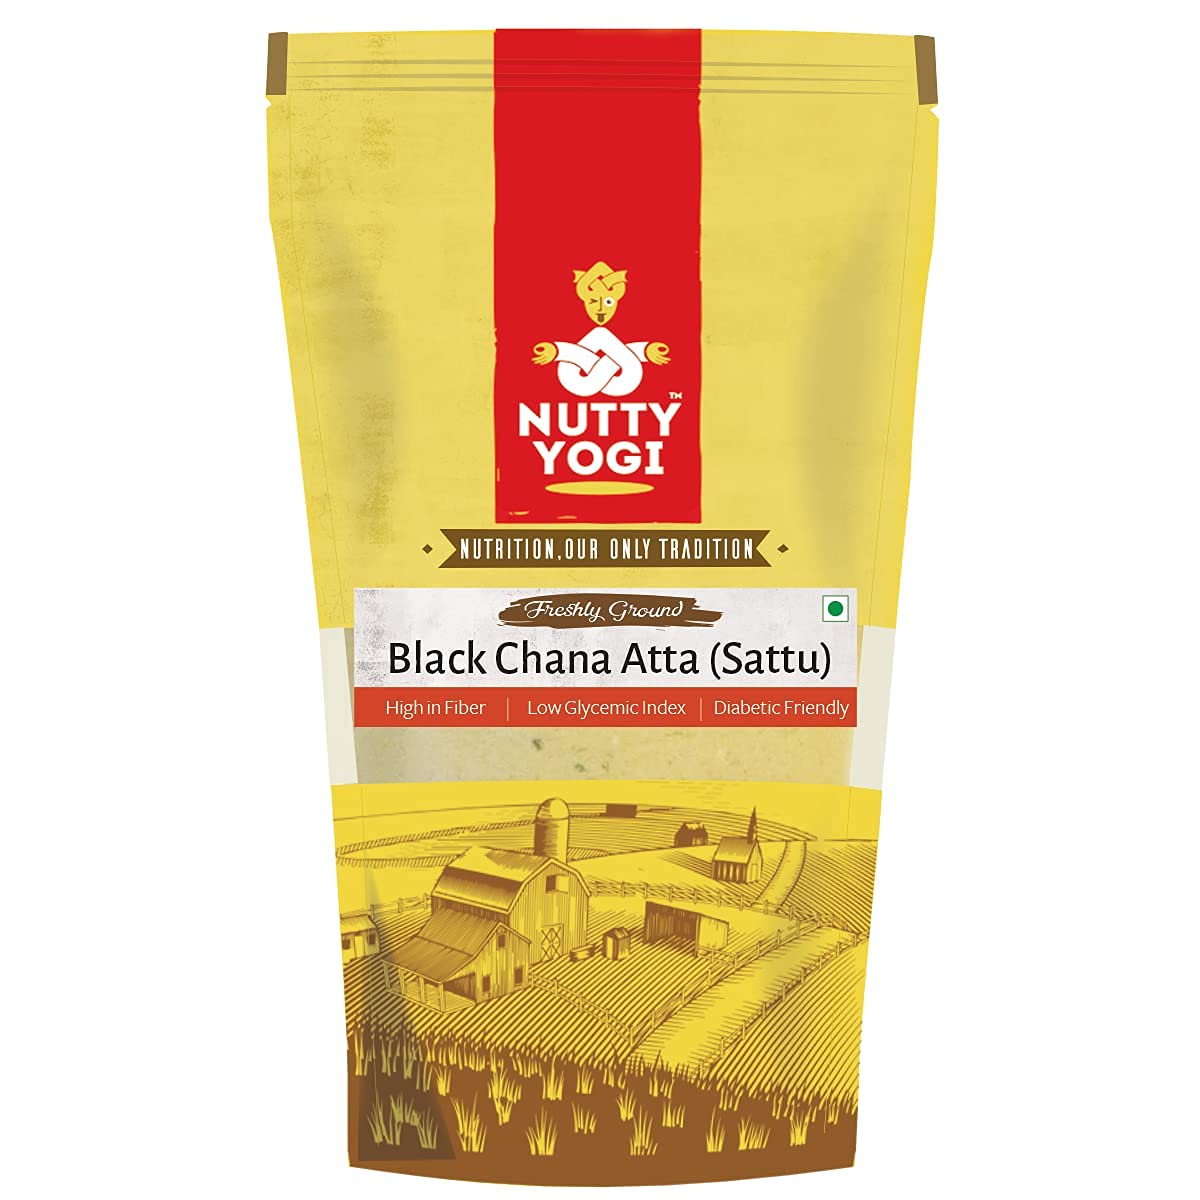 Nutty Yogi Black Chana Atta (Sattu)